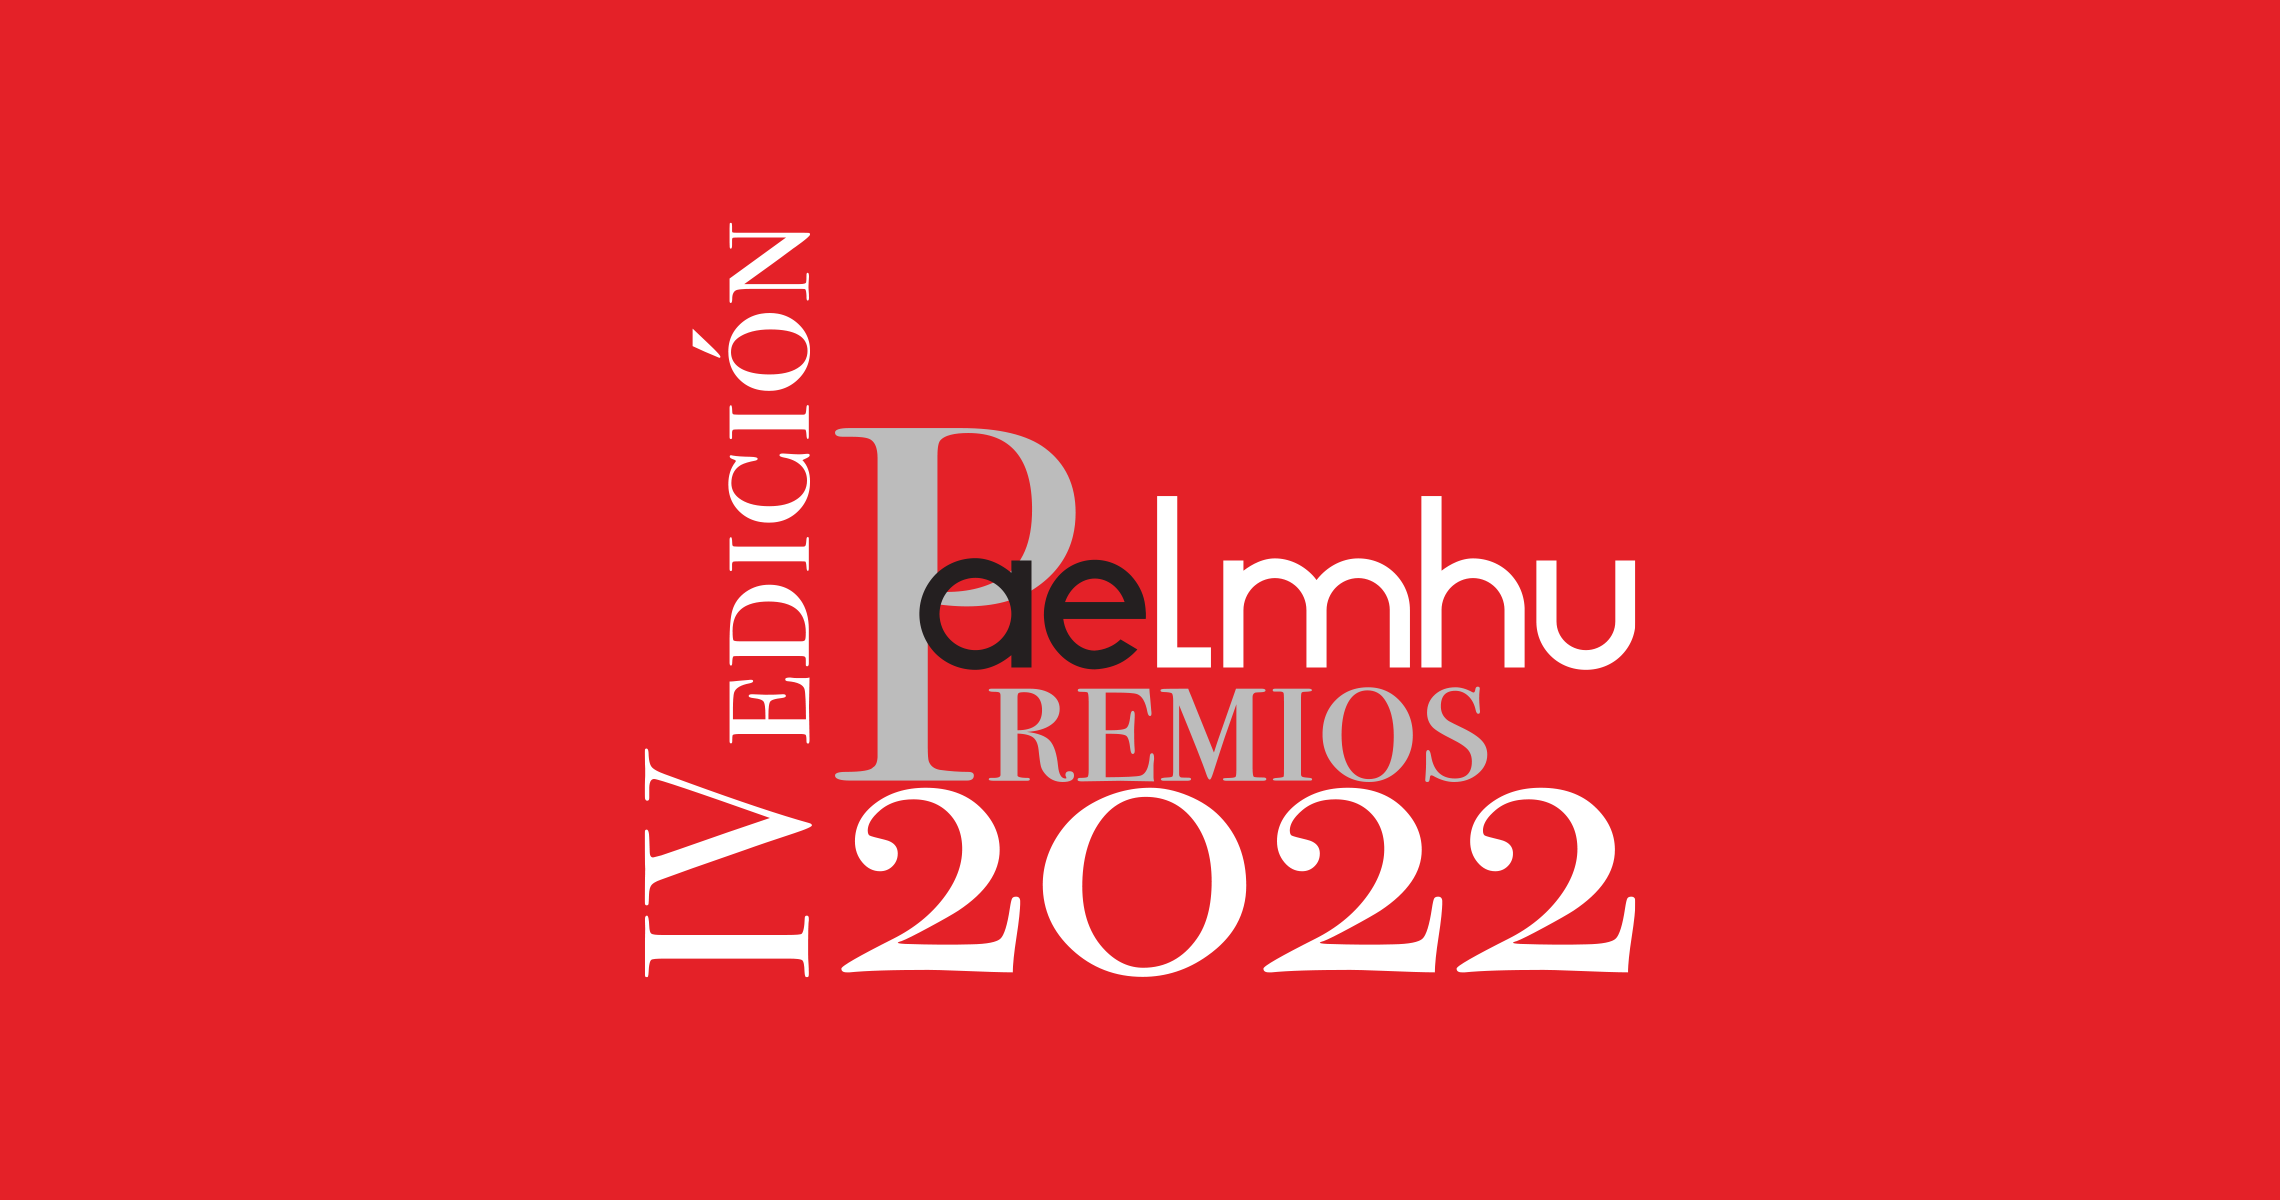 Abierto el plazo para participar en los Premios AELMHU 2022